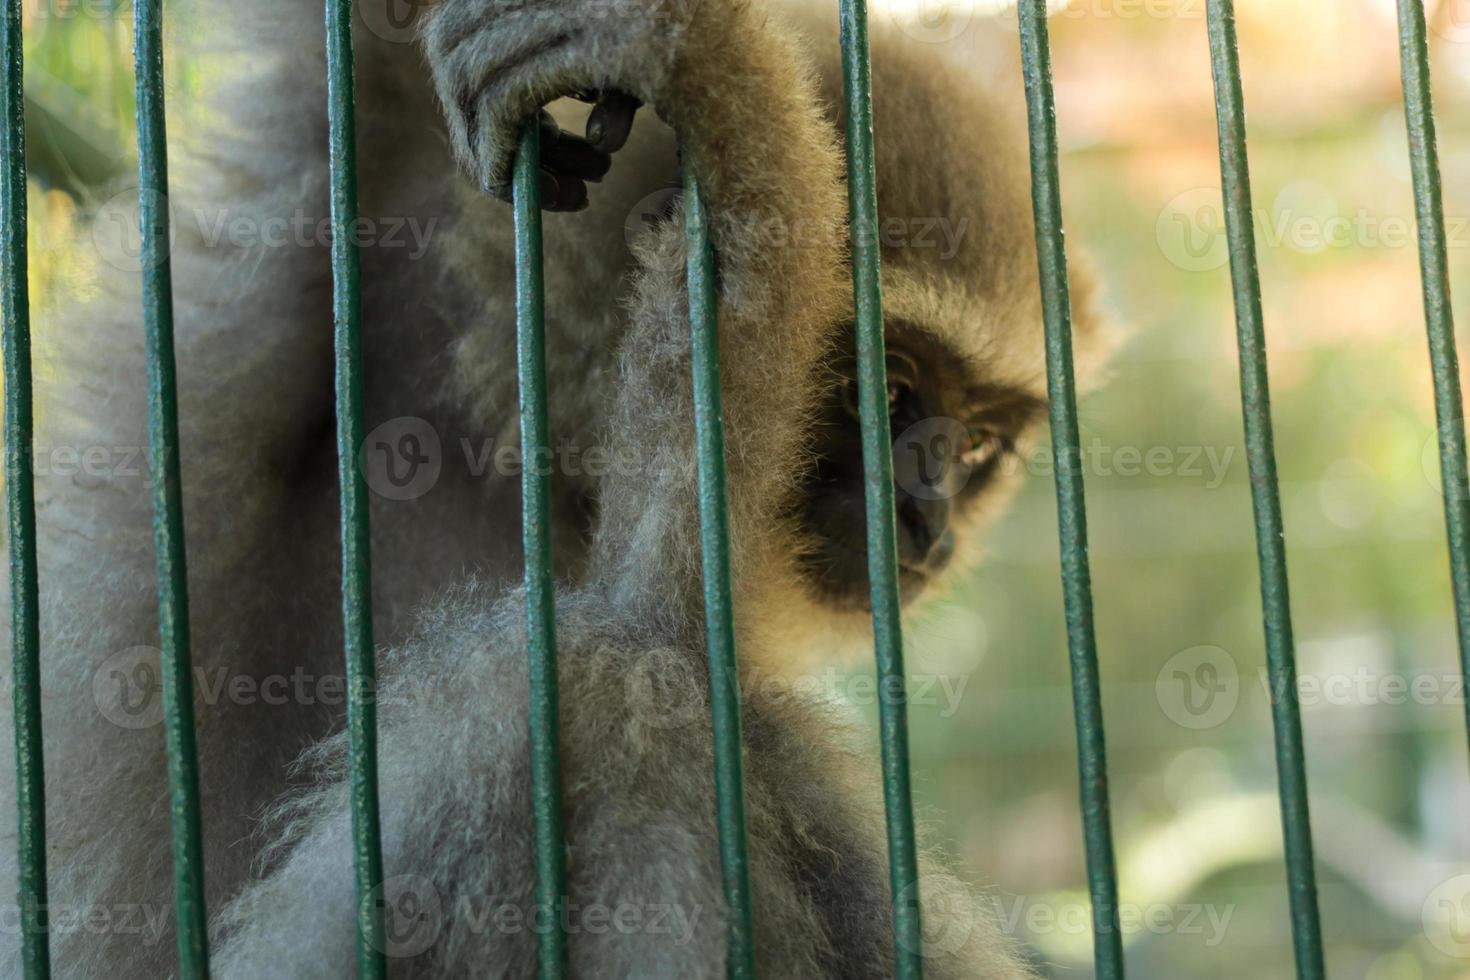 scimmia in una gabbia foto